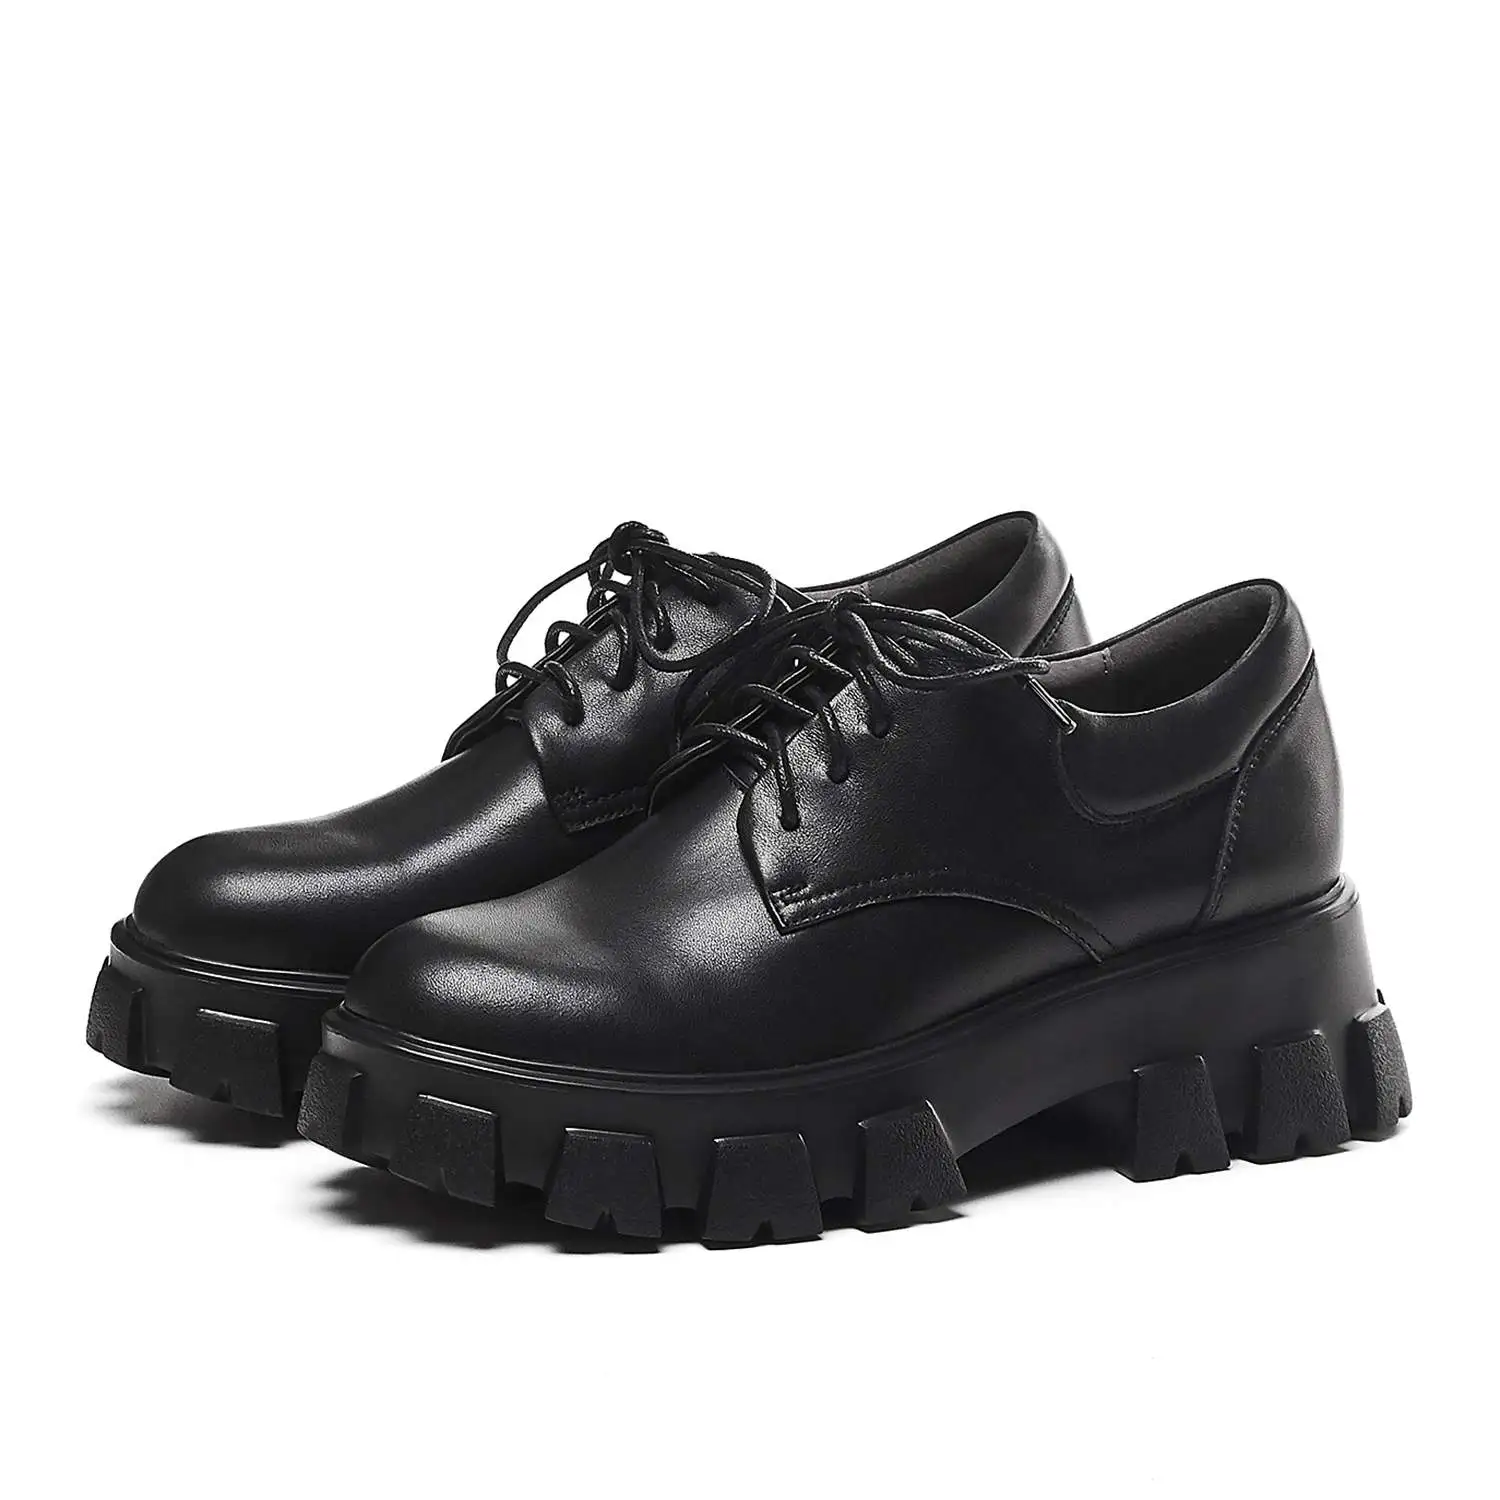 Krazing Pot/, консервативный стиль, коровья кожа, шнуровка, Нескользящие водонепроницаемые кроссовки Оксфорд, круглый носок, платформа, Вулканизированная обувь L8f1